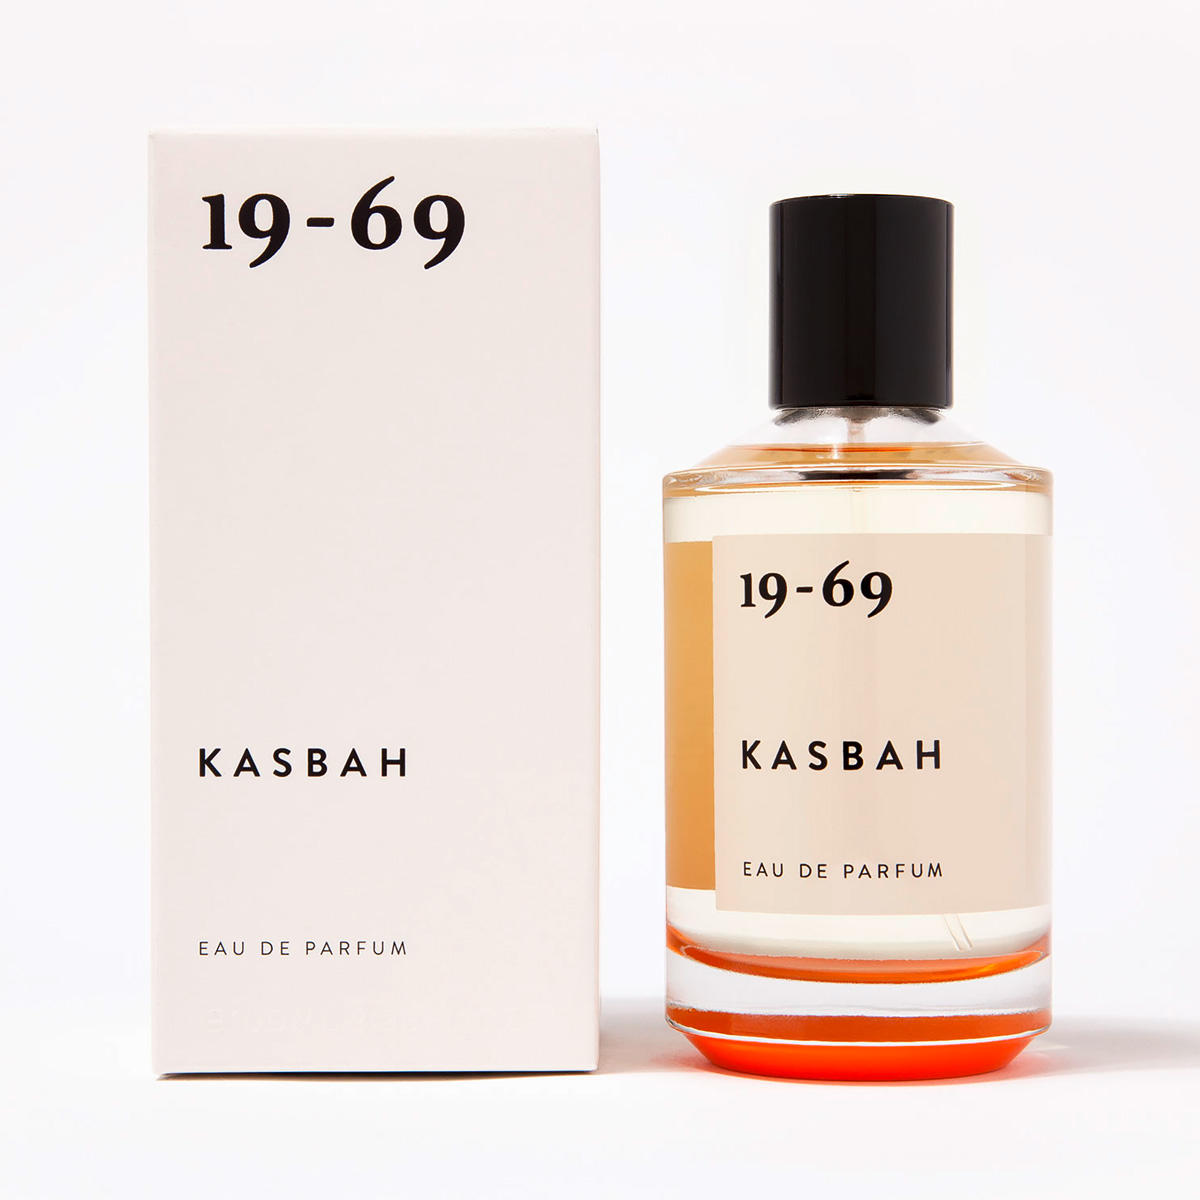 19-69 Kasbah Eau de Parfum 100 ml - 2